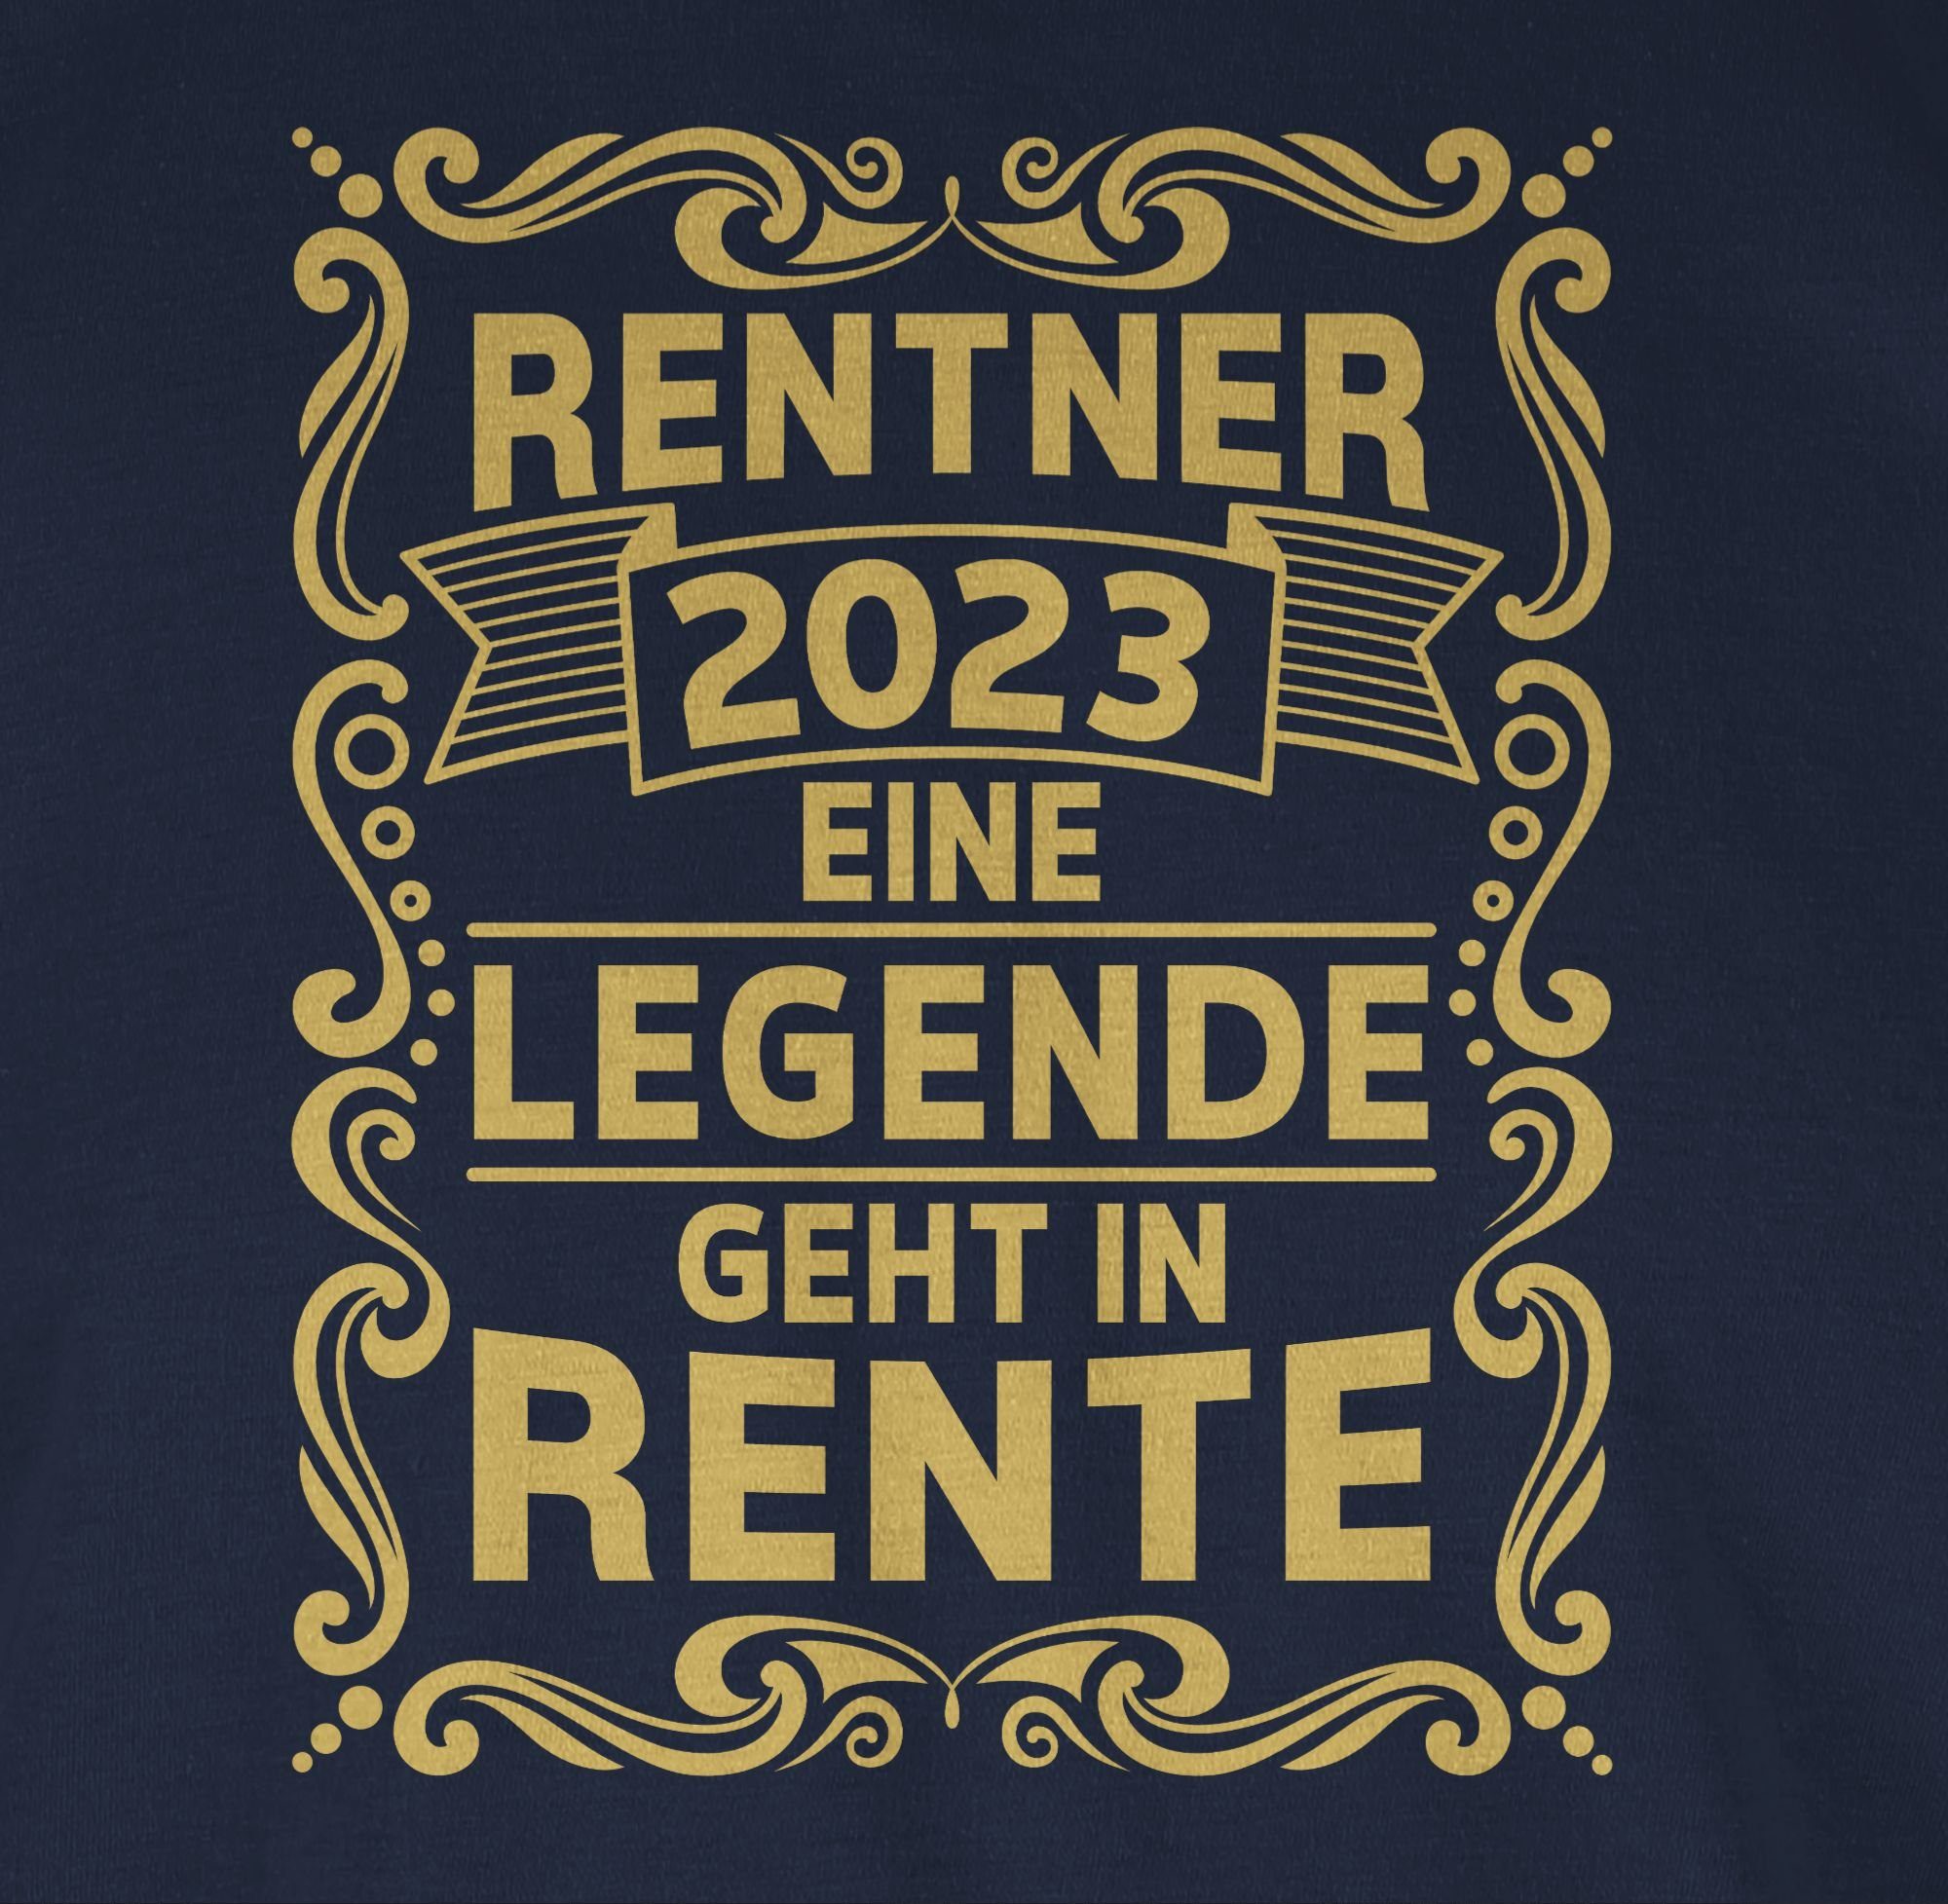 Rentner Blau Rente geht Legende Eine Navy Shirtracer Rentner 2023 in Geschenk T-Shirt 02